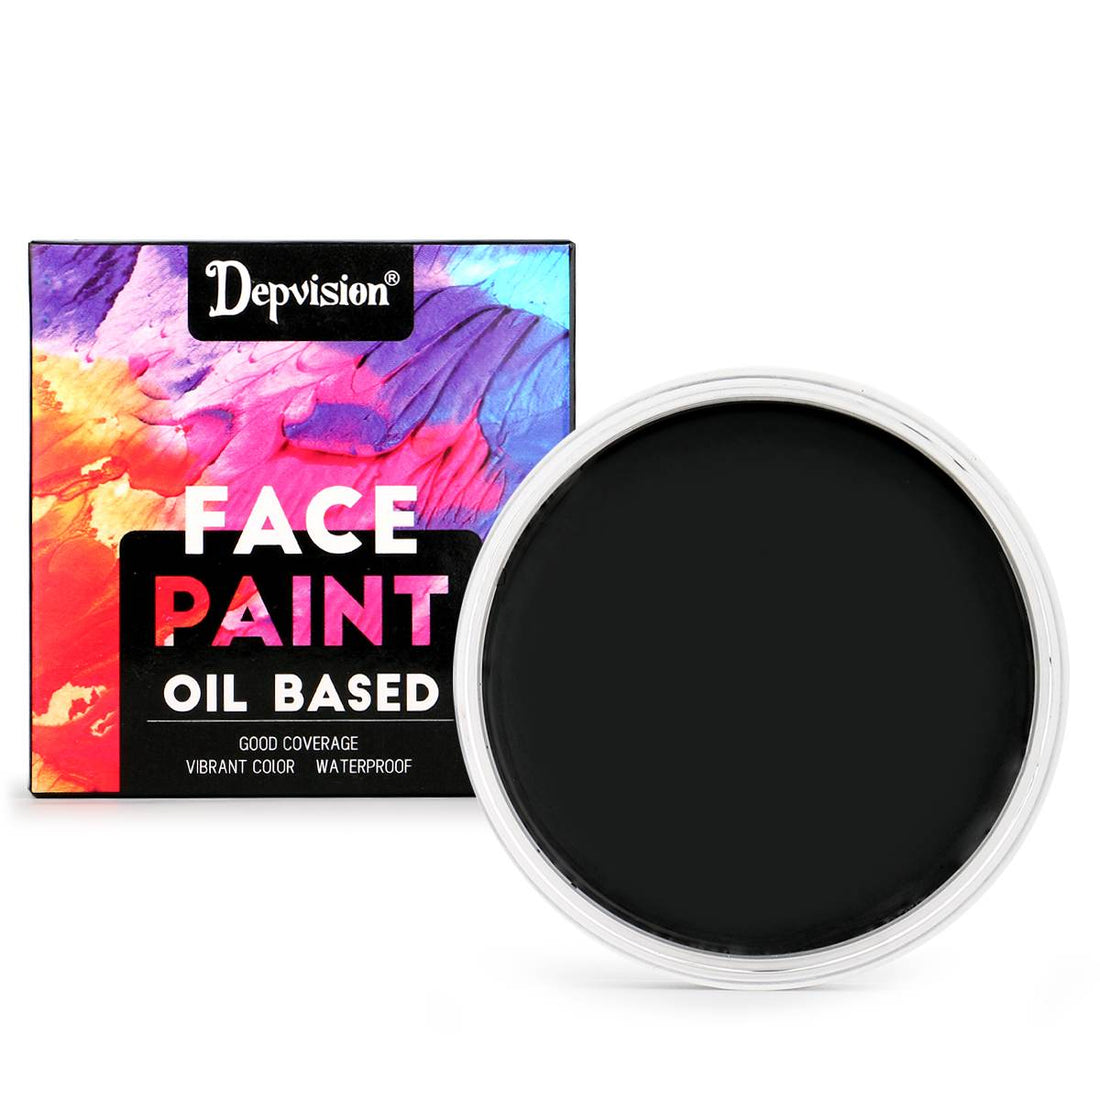 Waterproof Oil Based Face Paint - Black